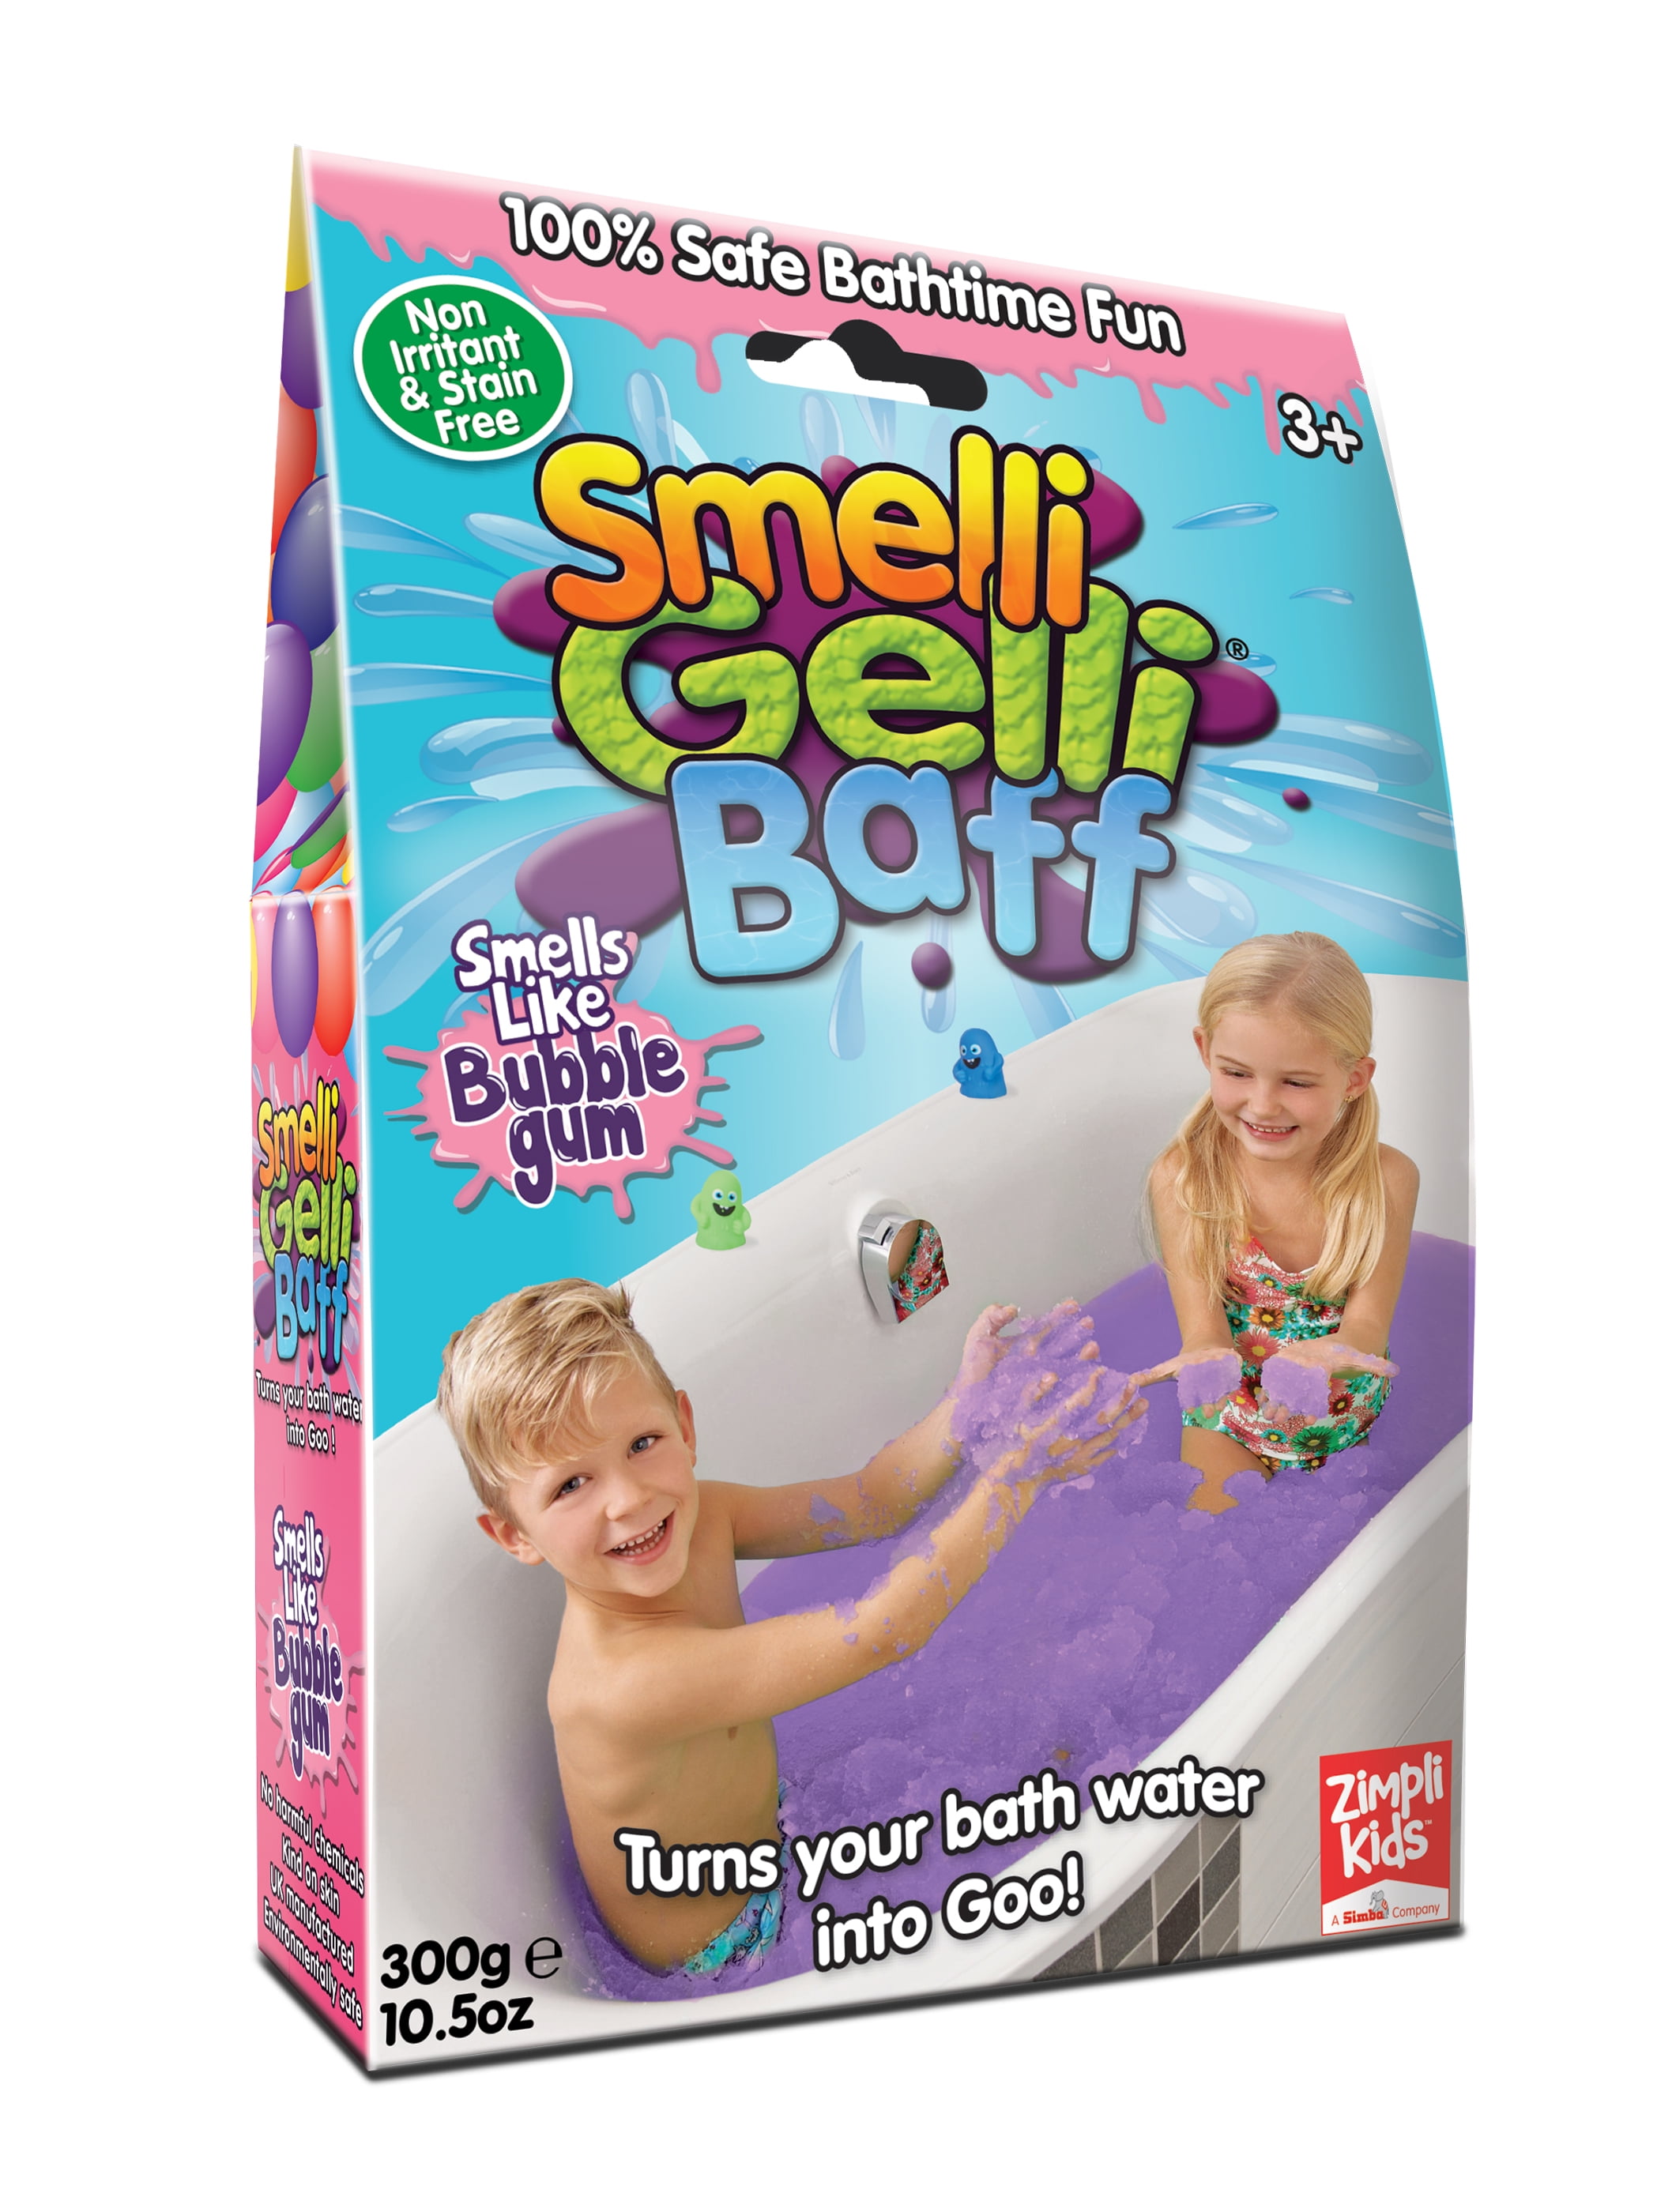 Gelli Play Water Green Red Snow Blue Pink Yellow Baff Bath zimpli Children 